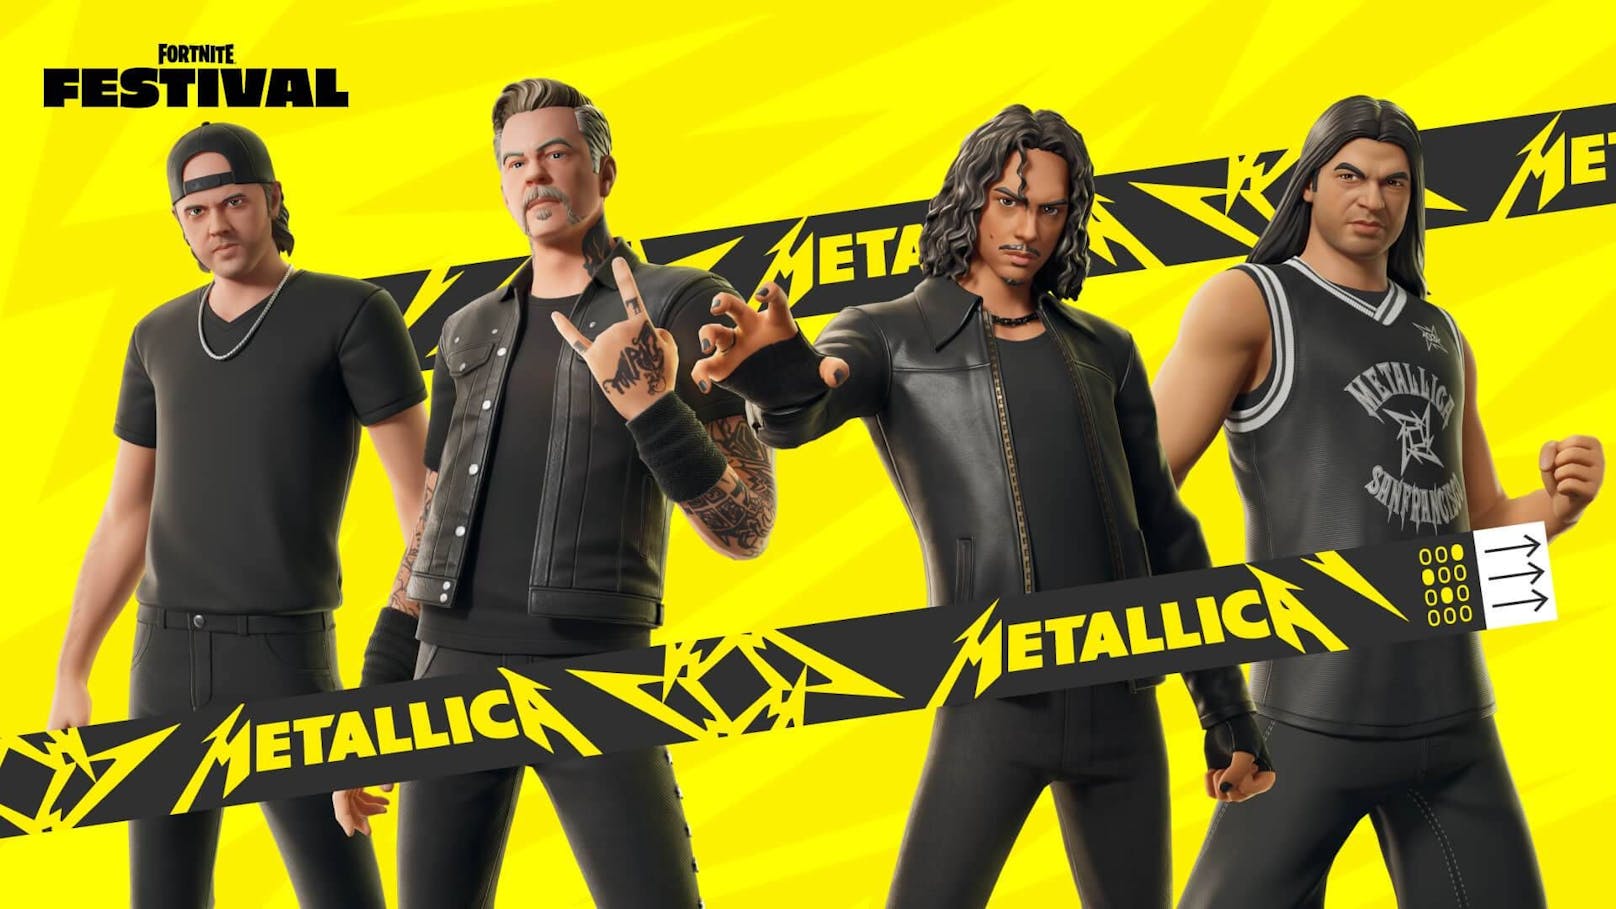 Metallica spielt am Wochenende live in einem Videospiel